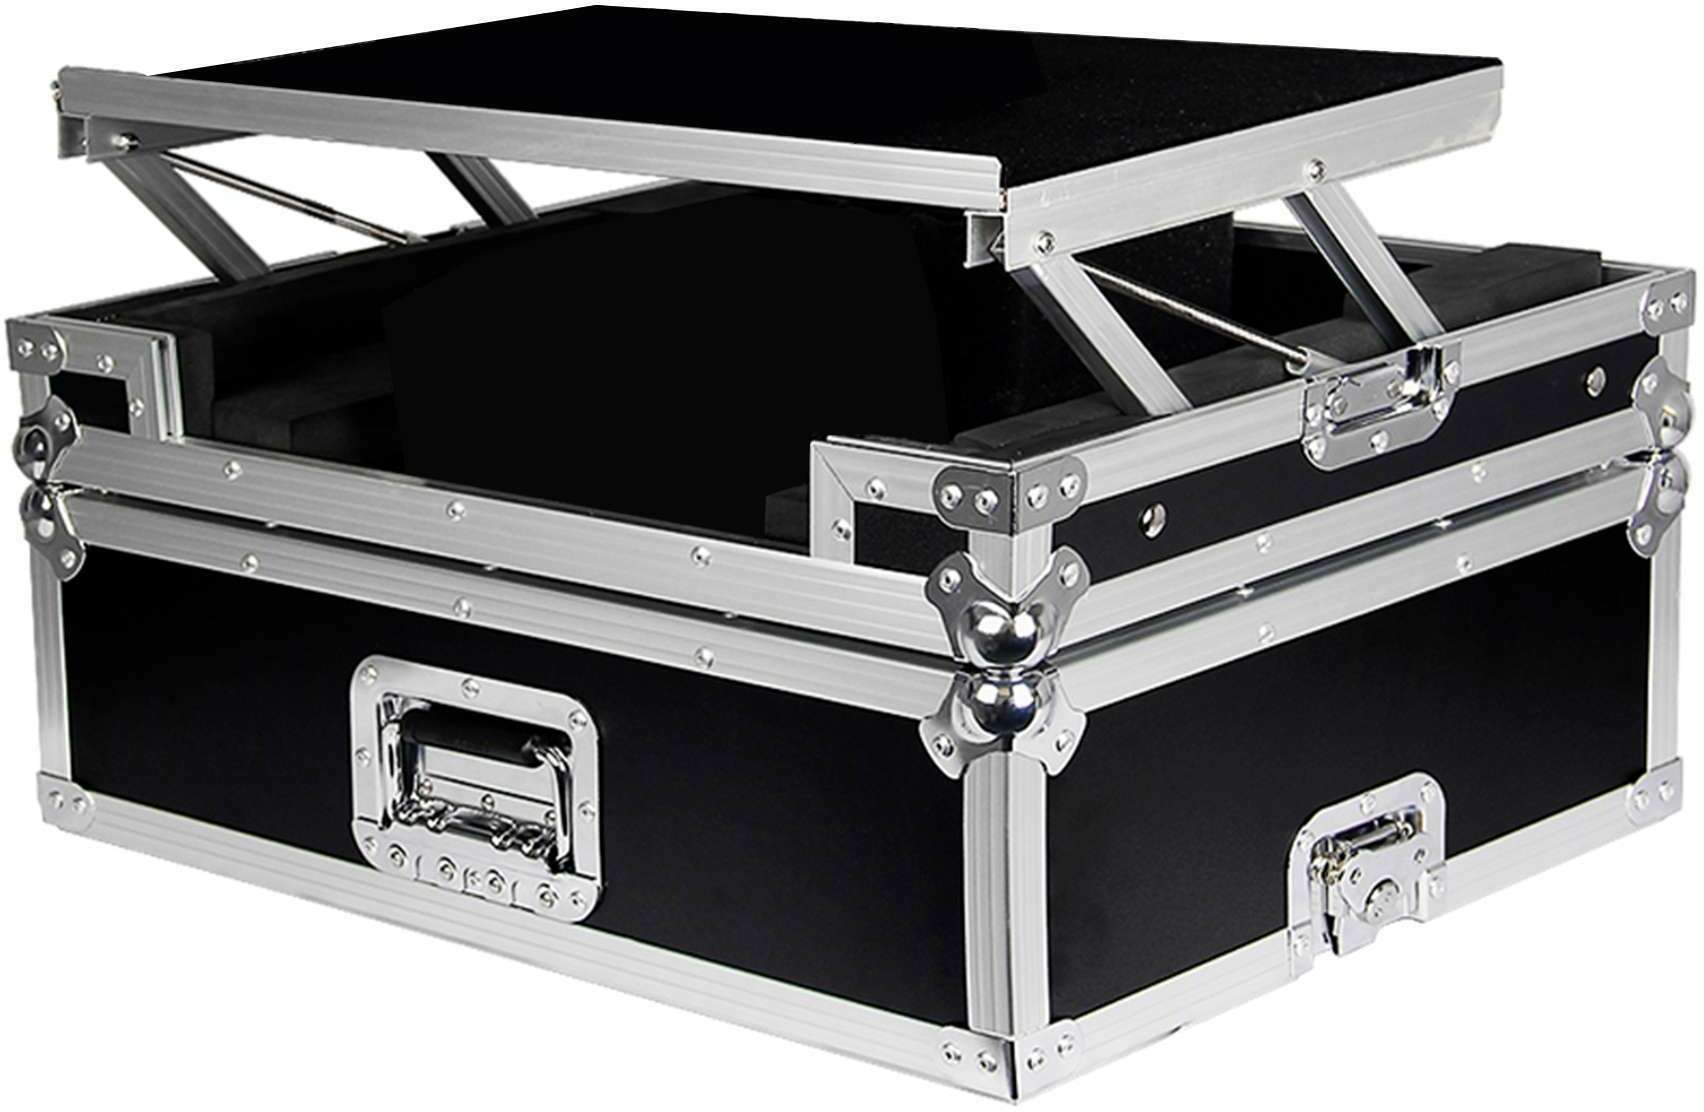 Power Acoustics Flight-case Pour ContrÔleur Ddj 400 - DJ flightcase - Main picture